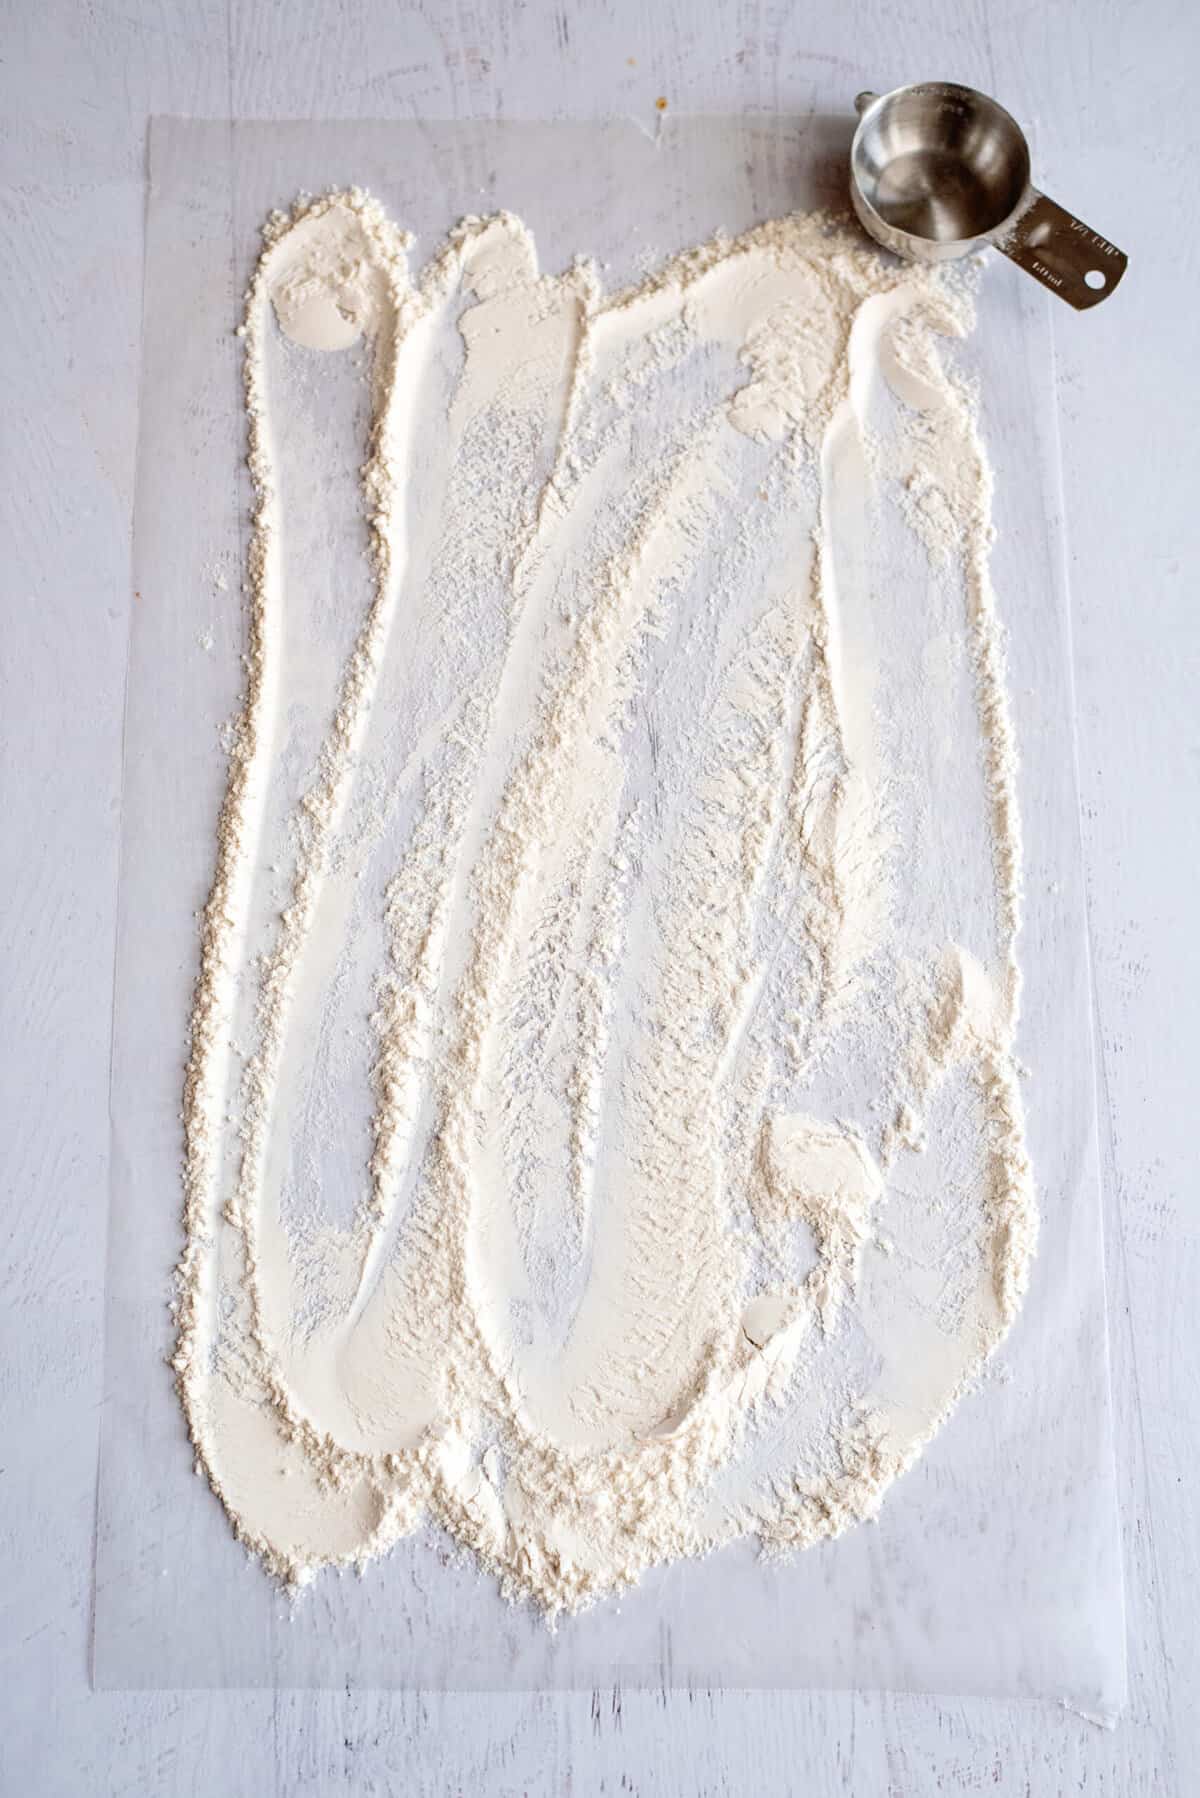 flour your surface